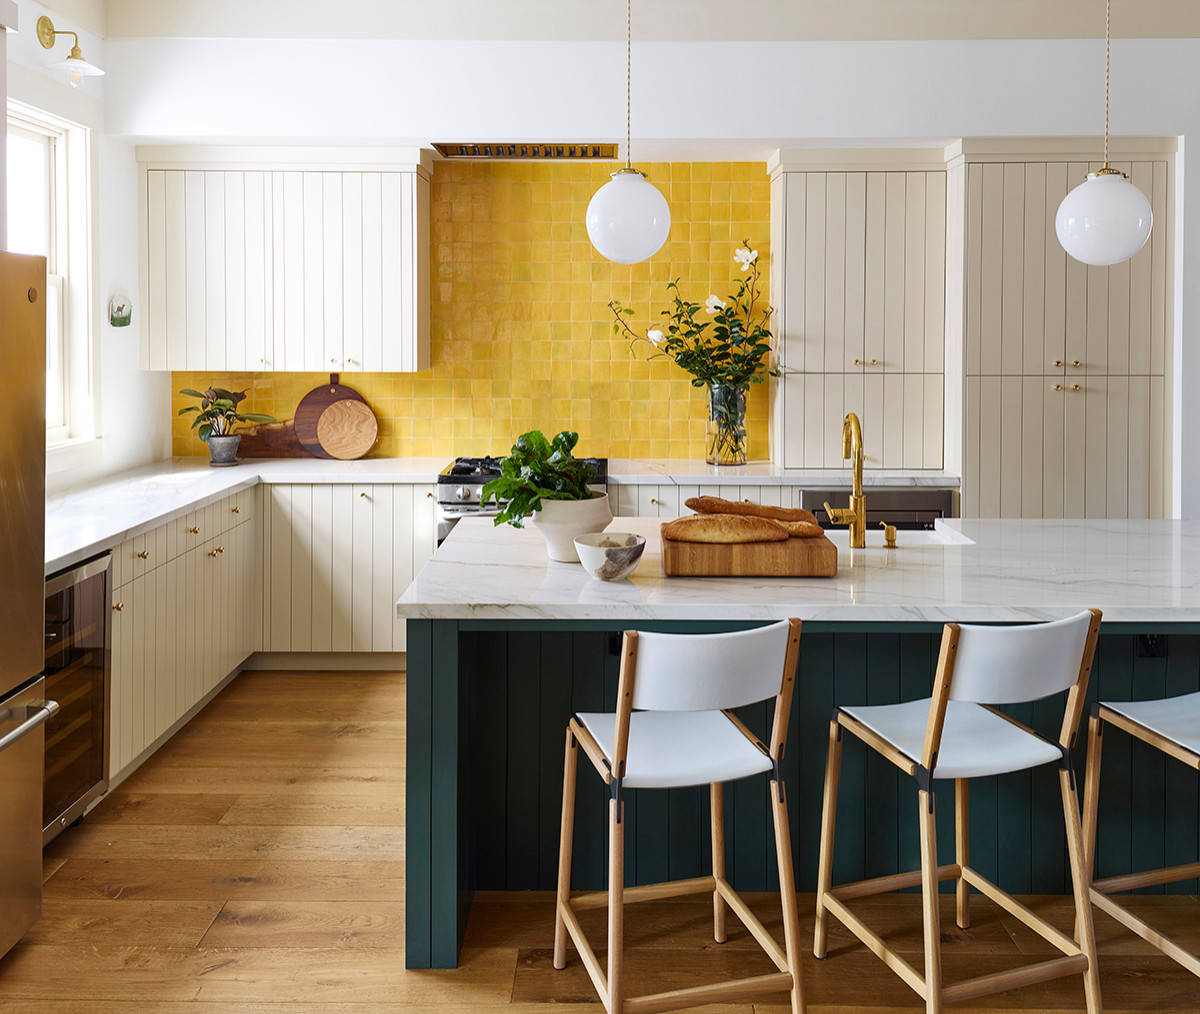 hình ảnh phòng bếp màu xanh lá cây và vàng chanh bắt mắt